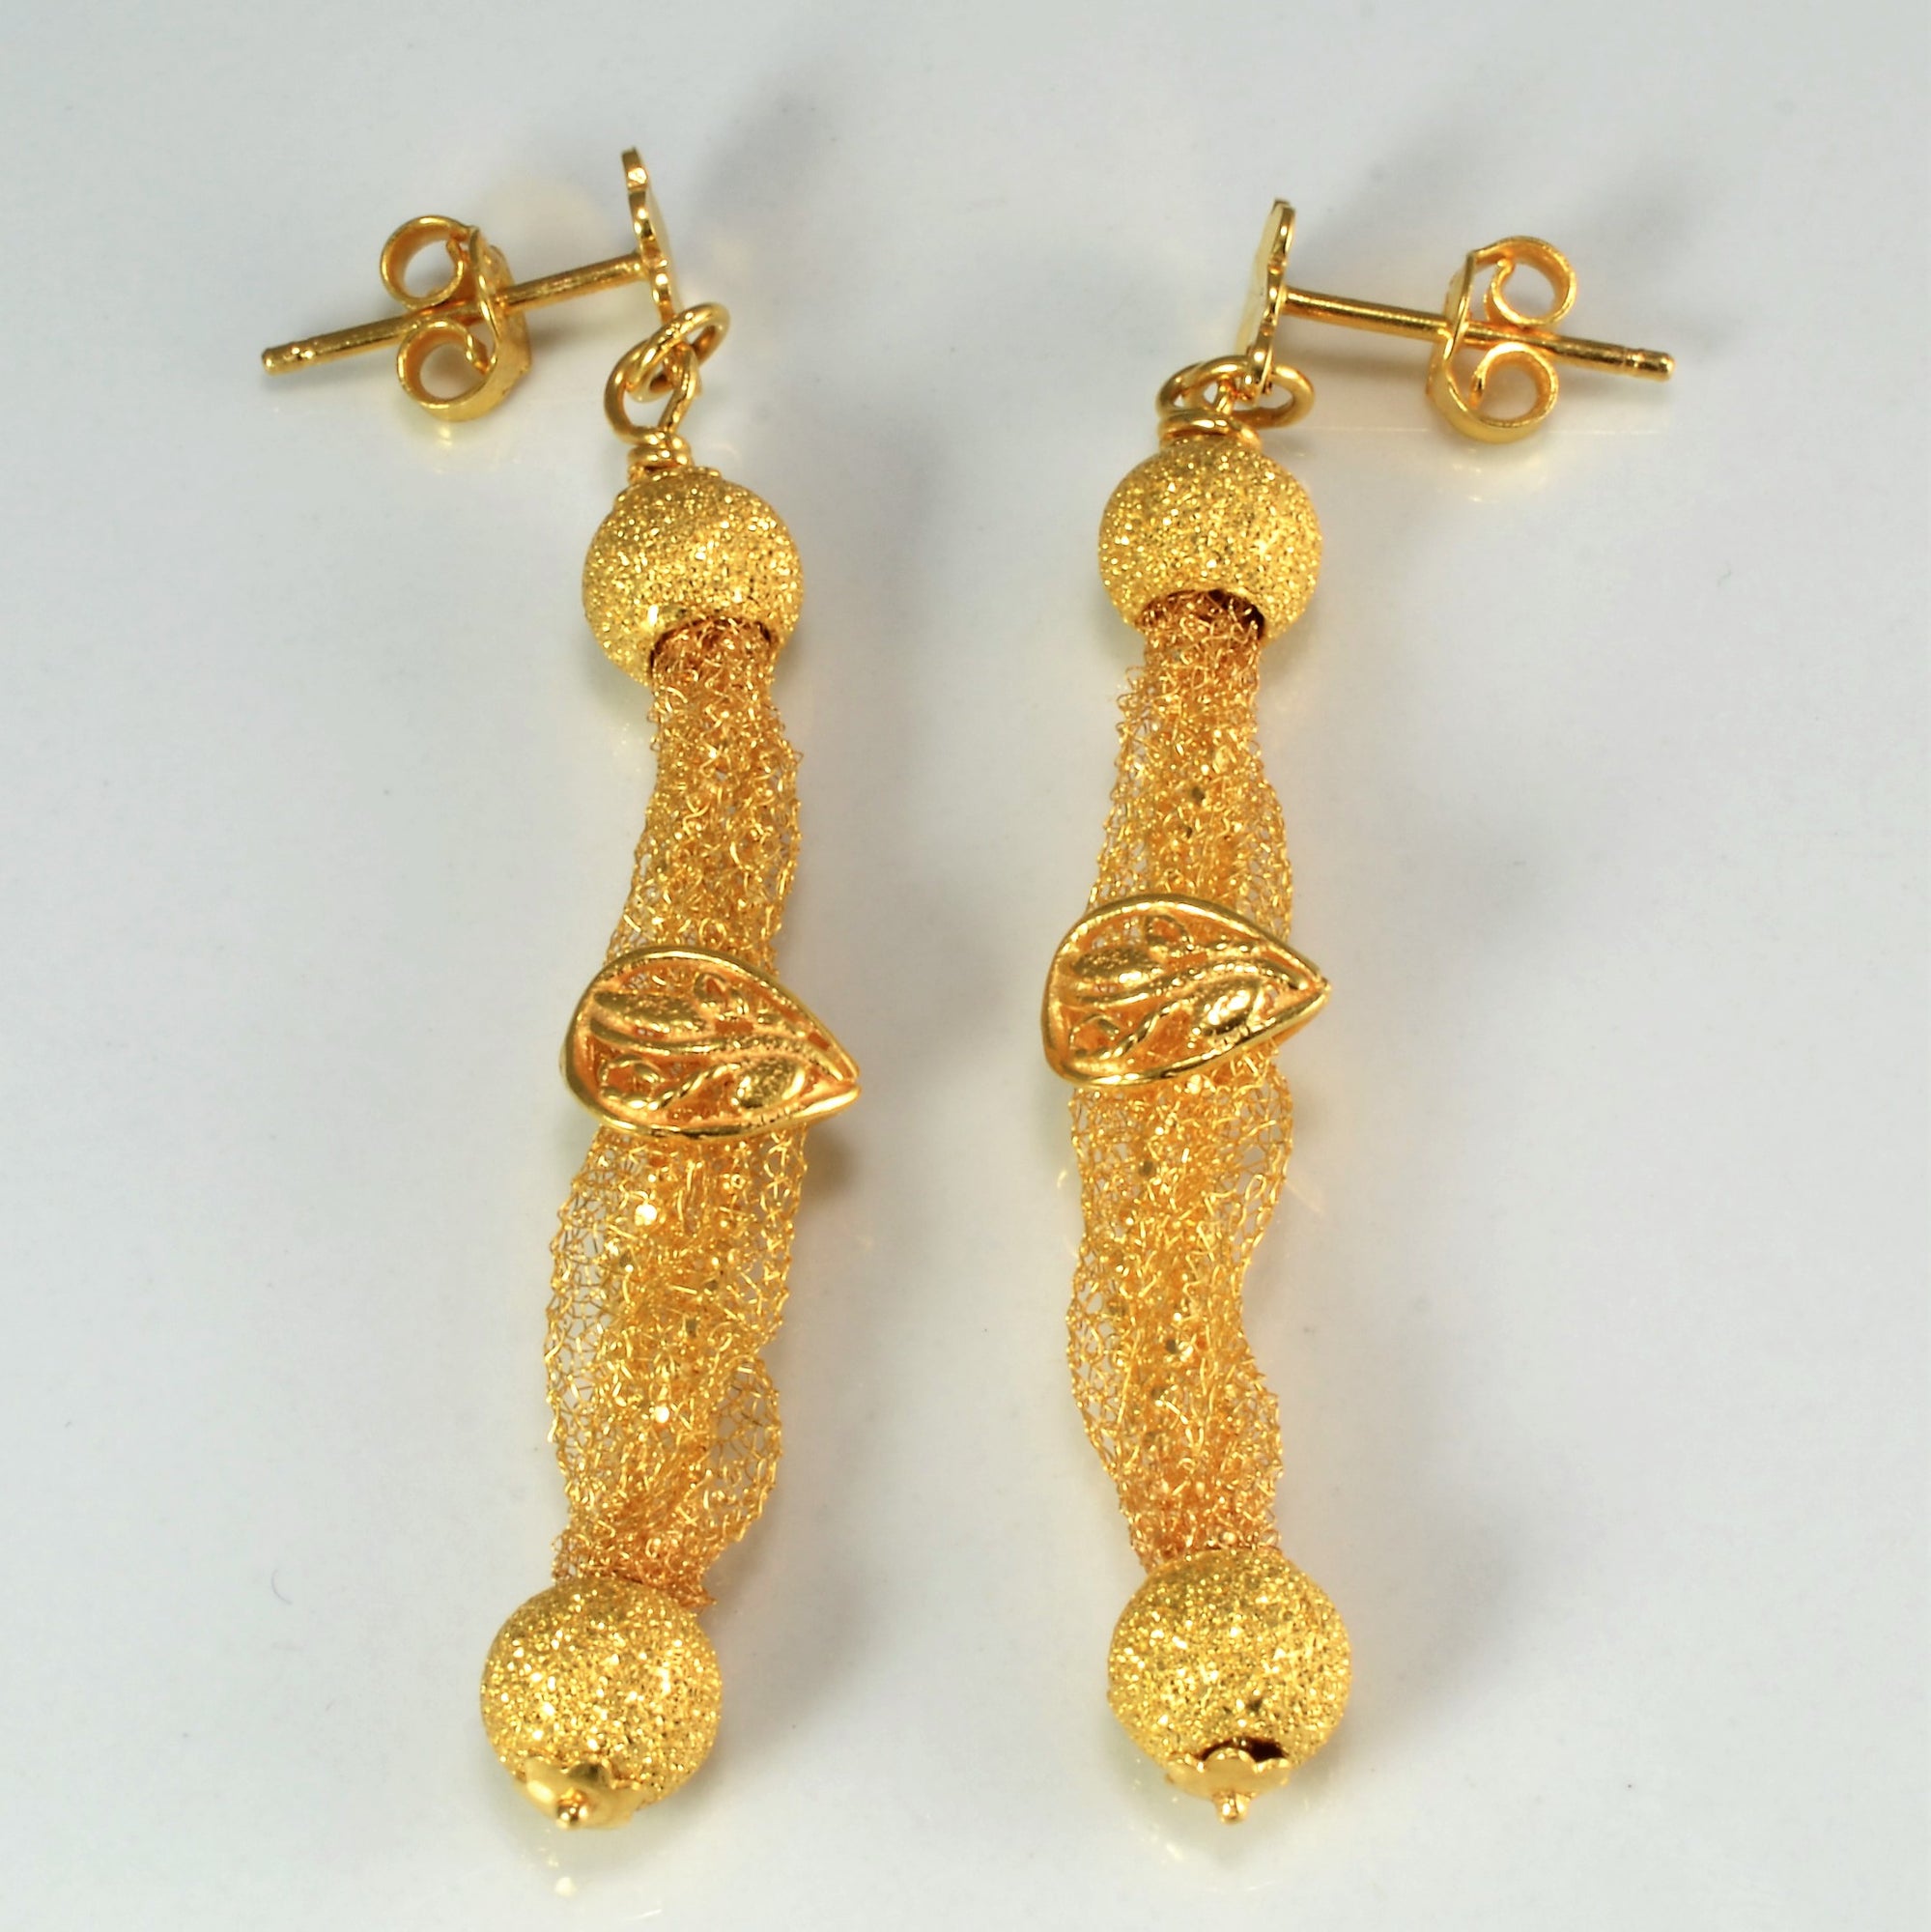 Woven Net Delicate 22K Gold Necklace & Earrings Set